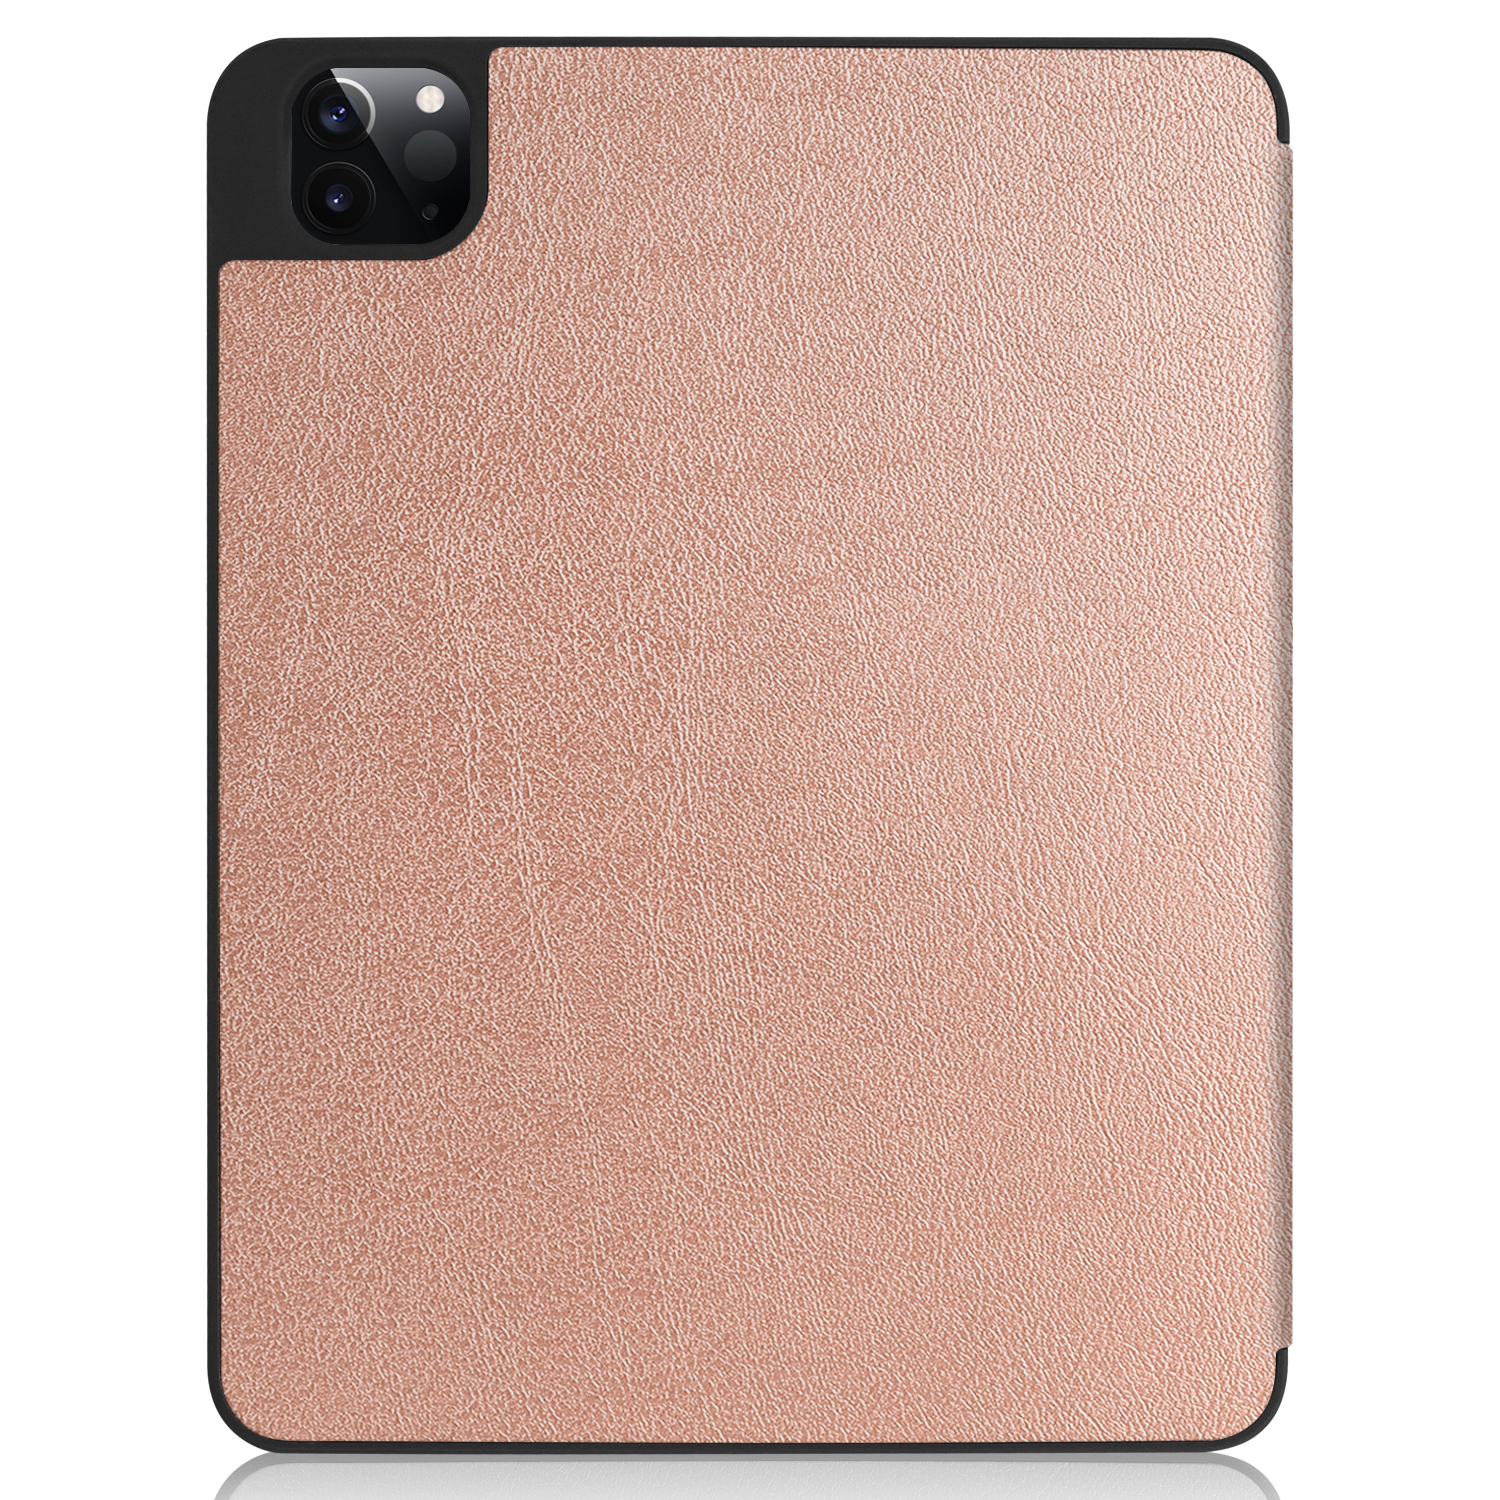 LOBWERK Hülle Schutzhülle Bookcover für Zoll bronze Apple 2020 Pro iPad Kunstleder, 12.9